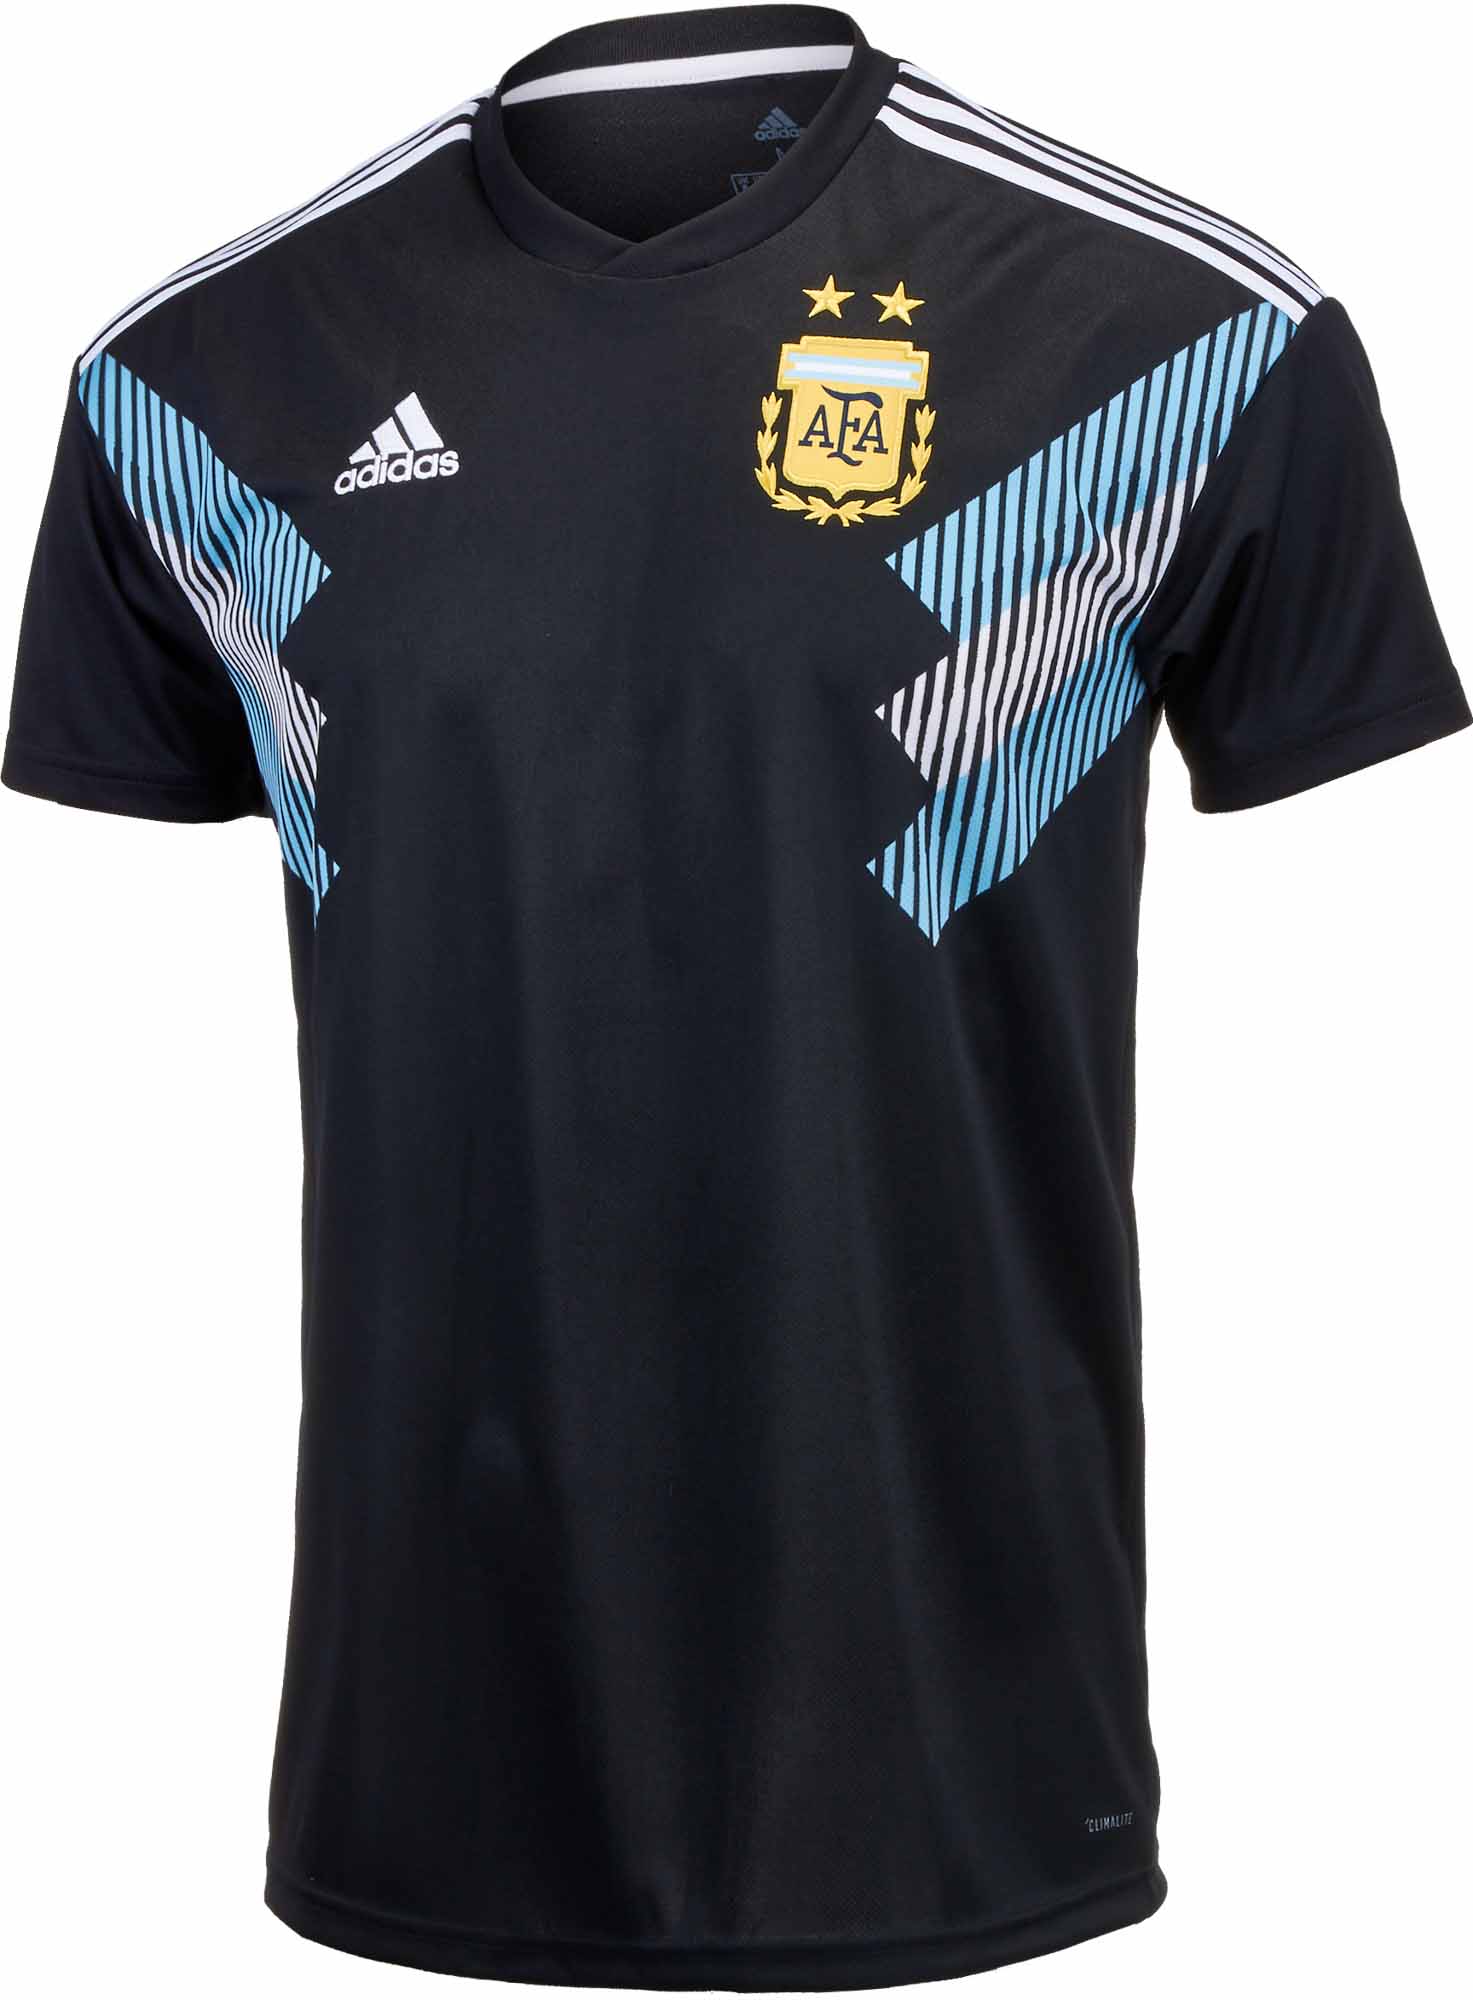 adidas argentina away jersey